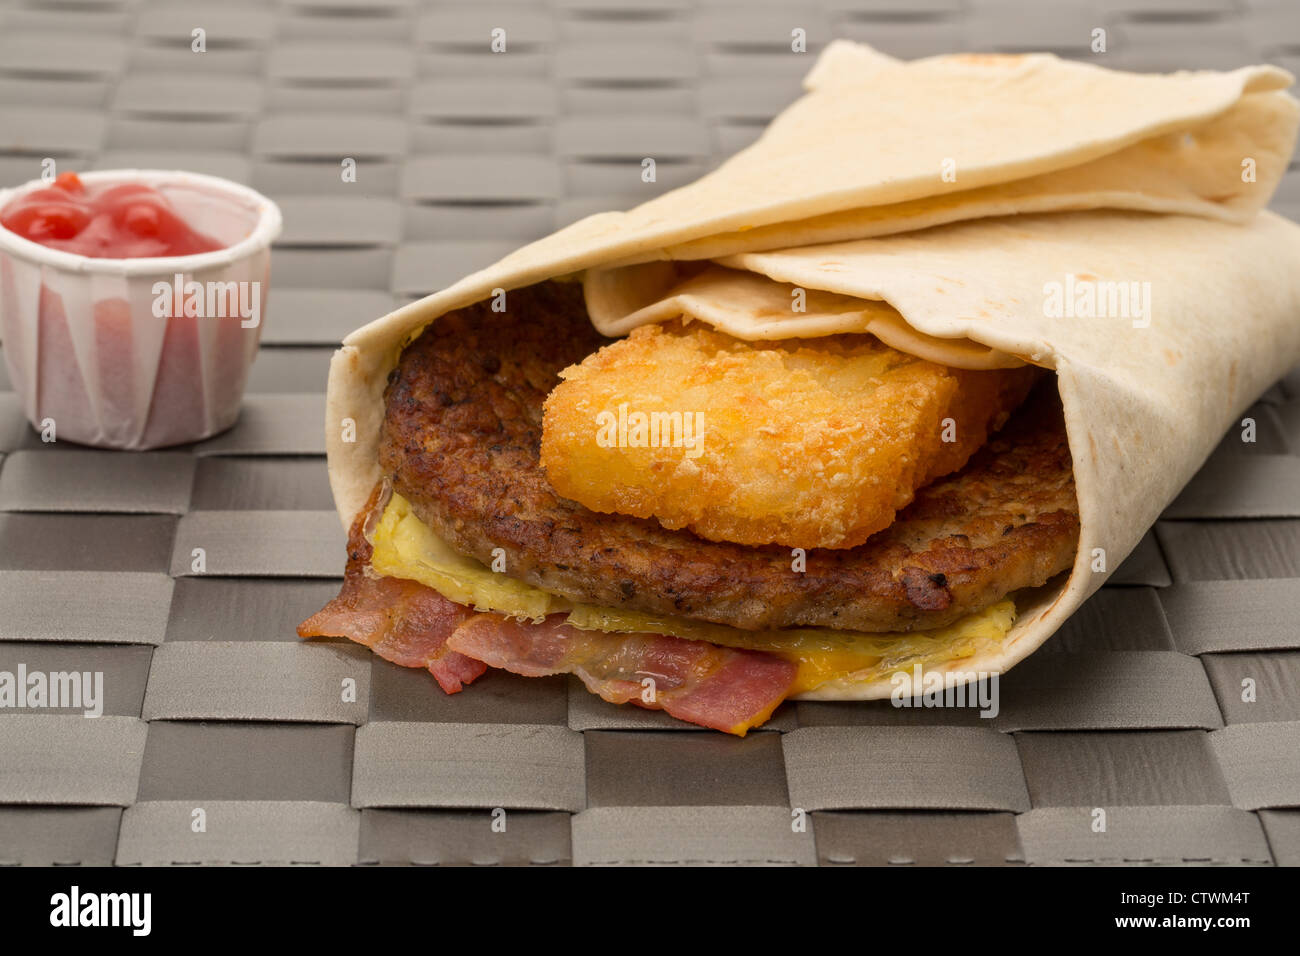 Burger, Sandwich mit Speck und eine Studioaufnahme Rösti - geringe Schärfentiefe - wickeln Stockfoto